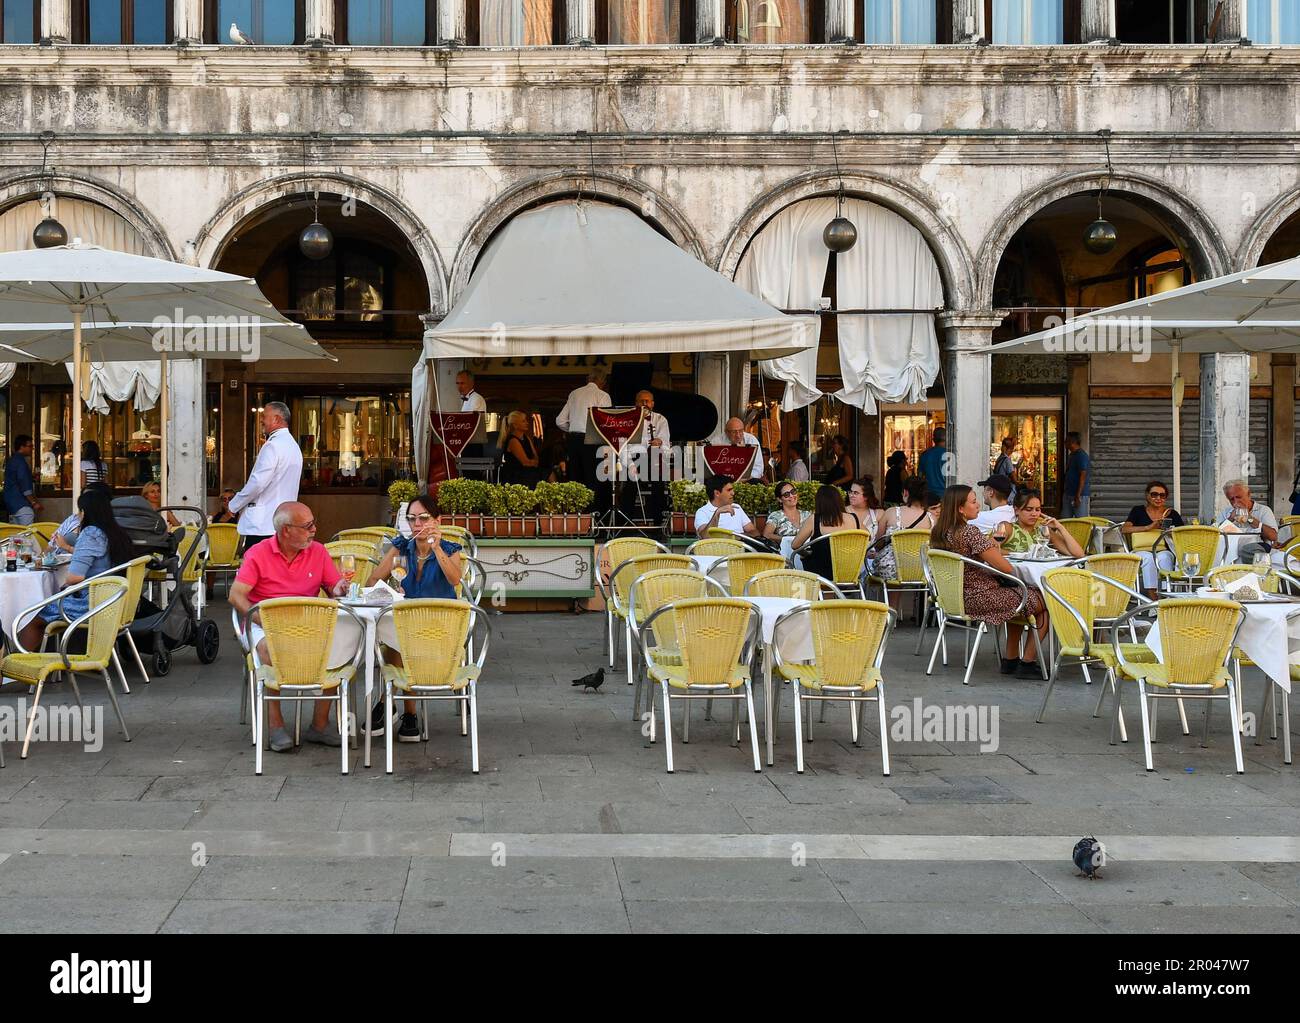 Das Caffè Lavena ist ein historisches Kaffeehaus, das 1750 auf dem berühmten Markusplatz errichtet wurde und im Sommer mit Touristen in Venedig, Venetien, Italien, unterwegs ist Stockfoto